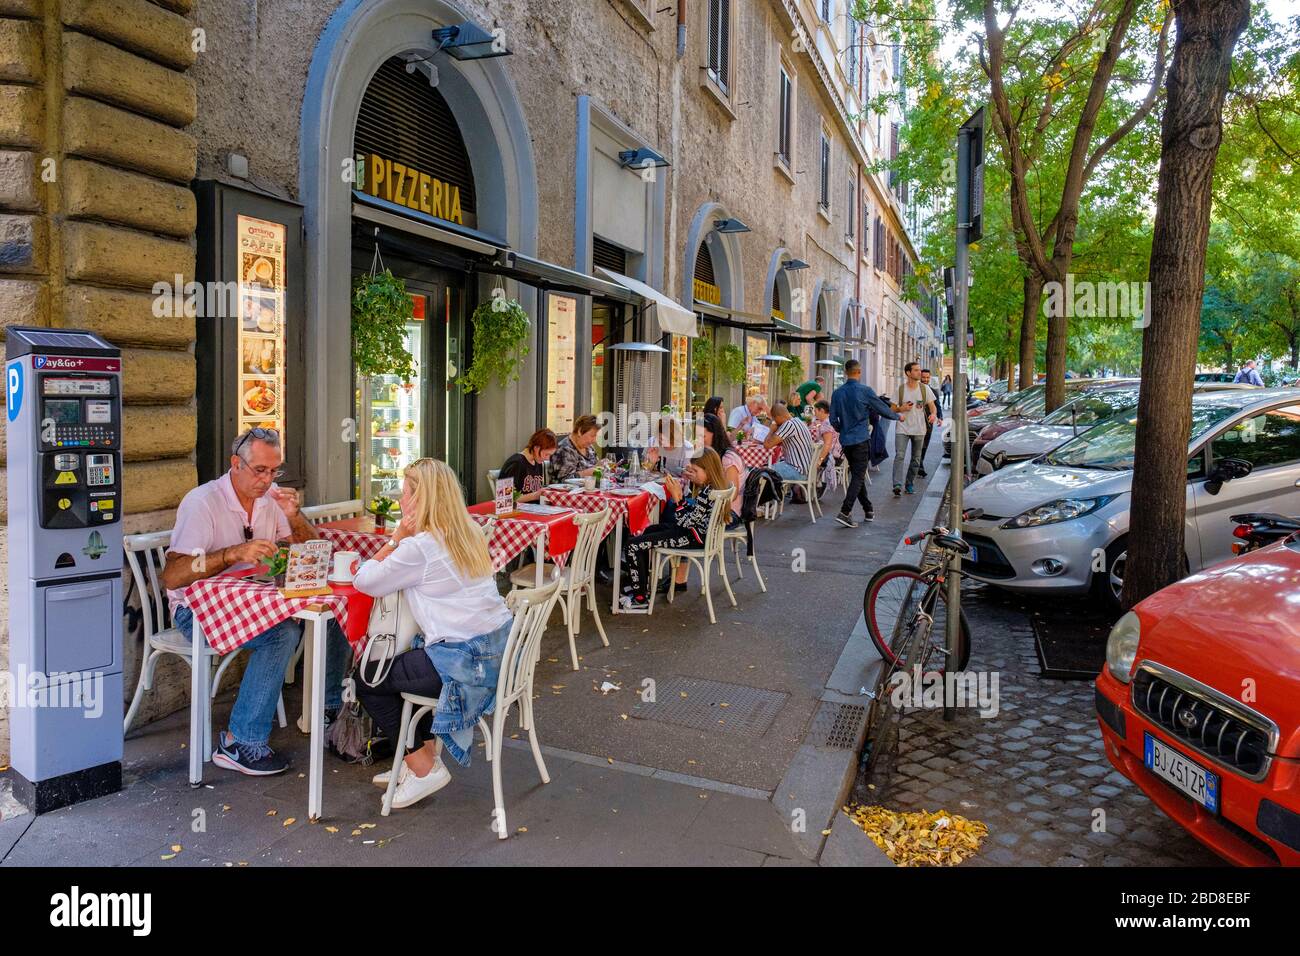 Cena all'aperto, persone che mangiano sui tavoli all'aperto sul marciapiede presso la pizzeria Ottavio Pizza e Spaghetti a Roma, Italia. Foto Stock